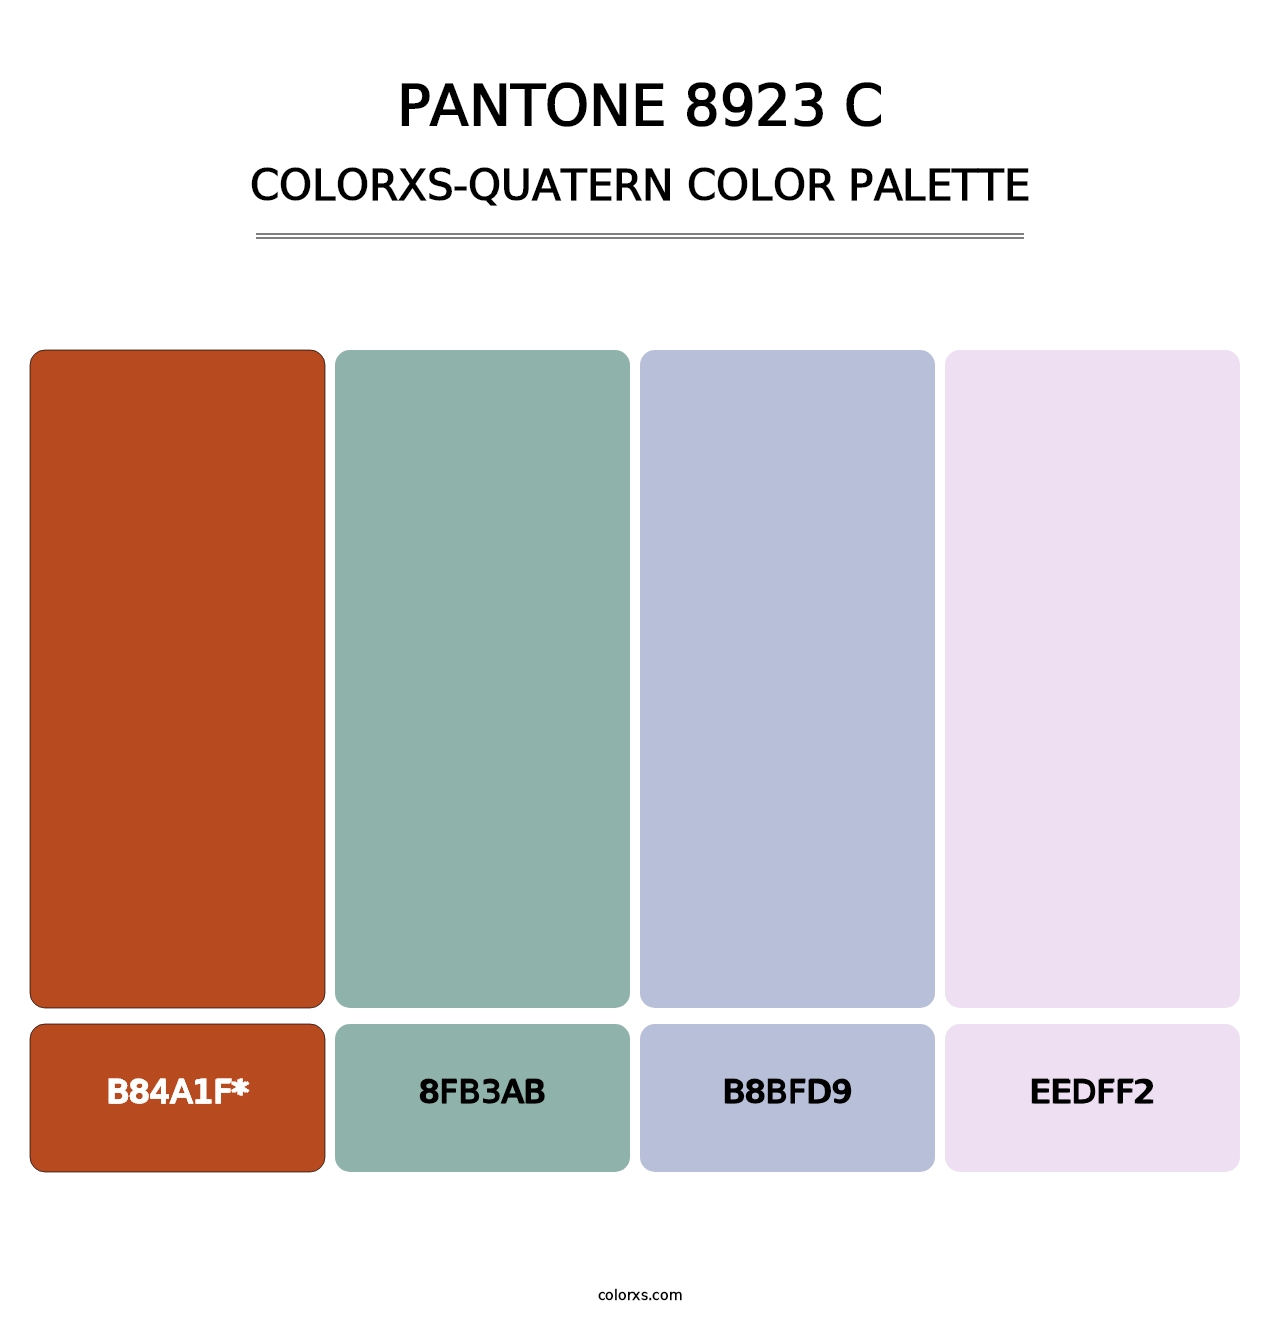 PANTONE 8923 C - Colorxs Quatern Palette